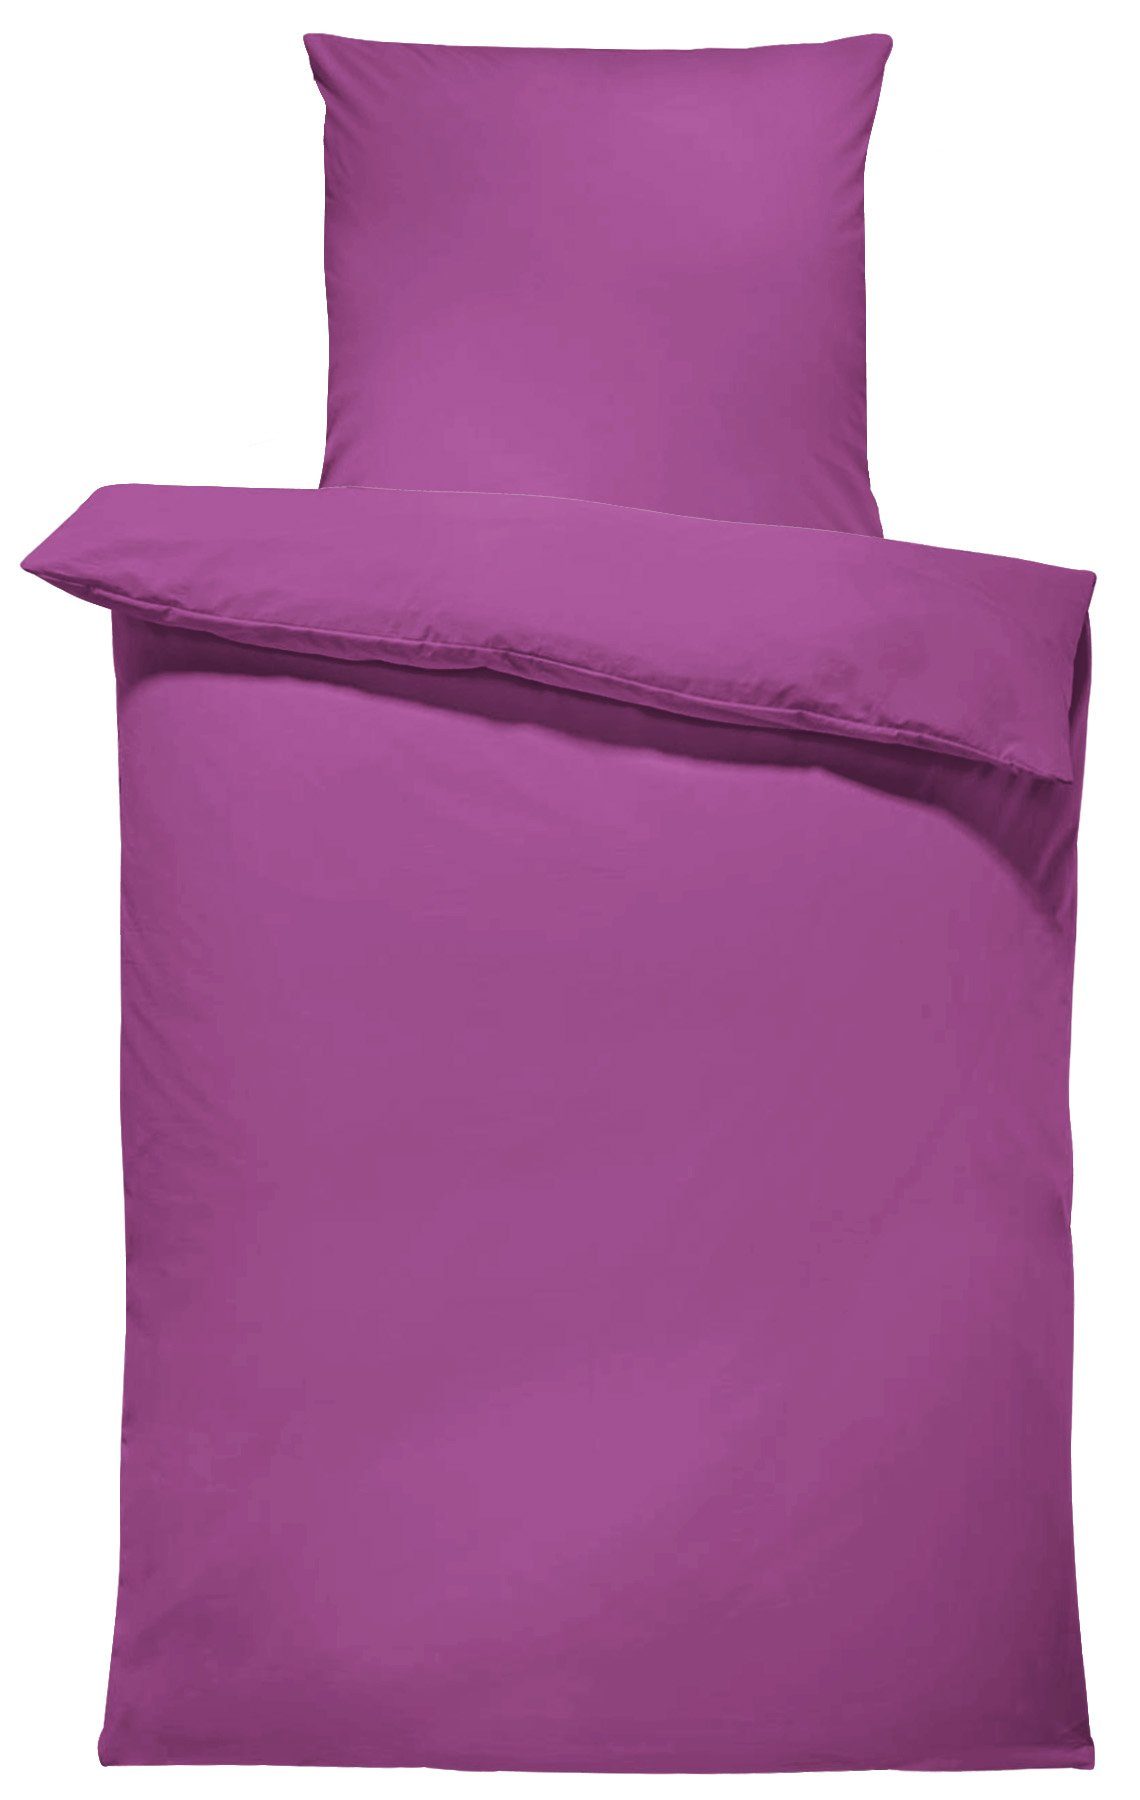 Bettwäsche Unifarben Einfarbig, One Home, Renforcé, 2 teilig, Baumwolle mit Reißverschluss, Übergröße lila